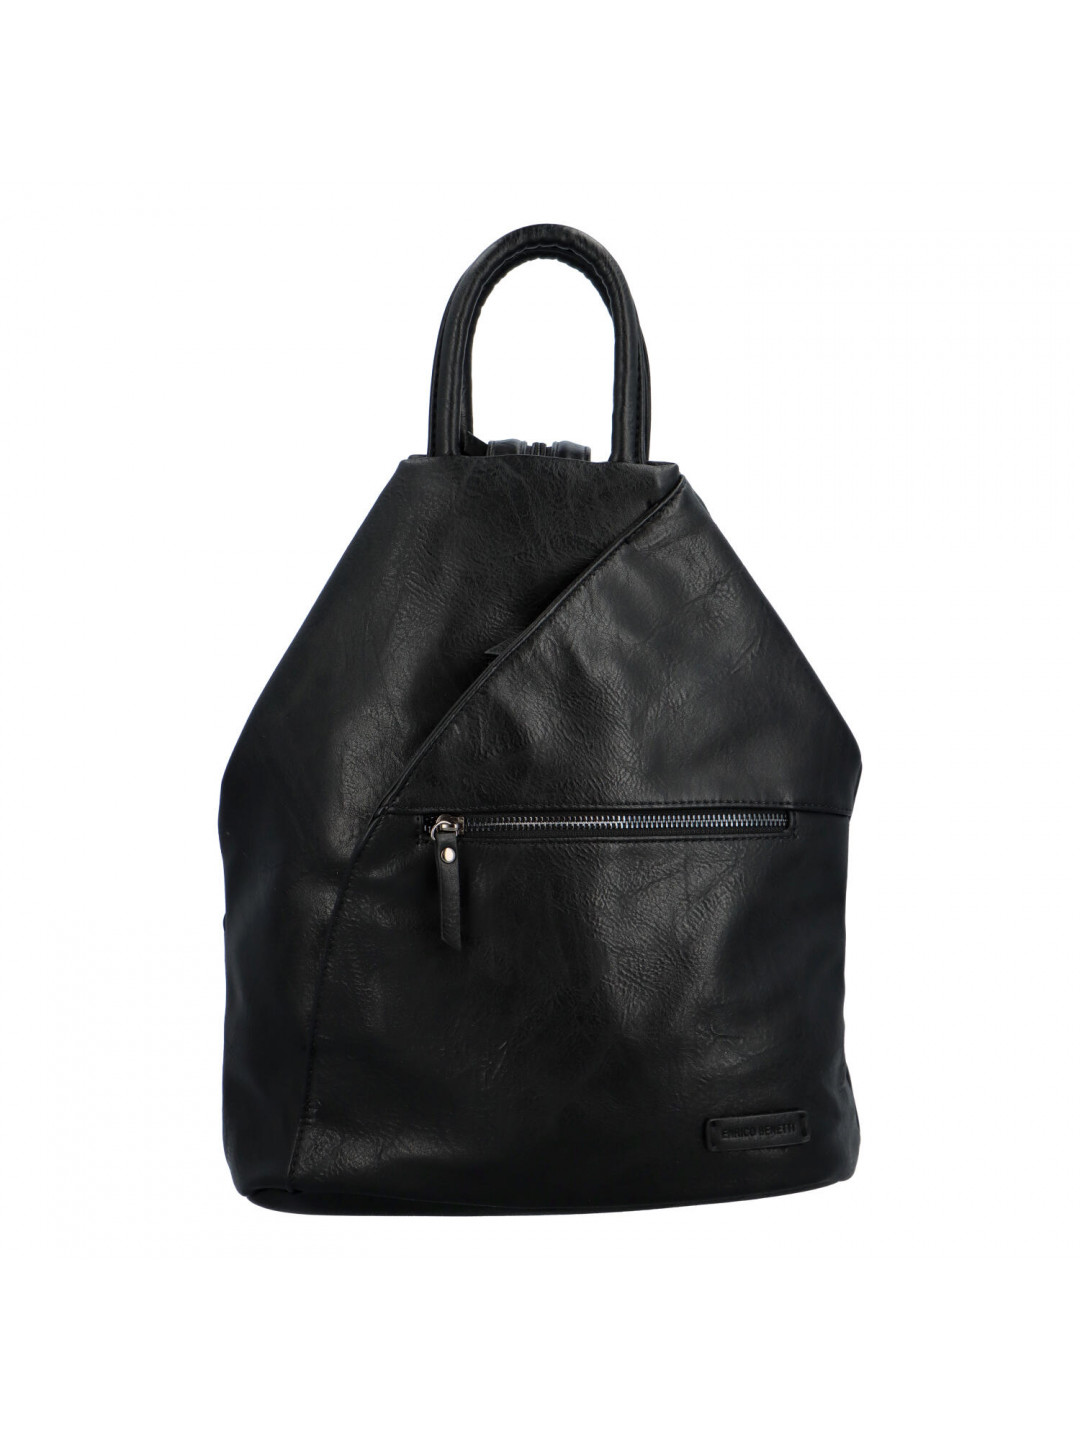 Originální dámský batoh kabelka černý – Enrico Benetti Fabio